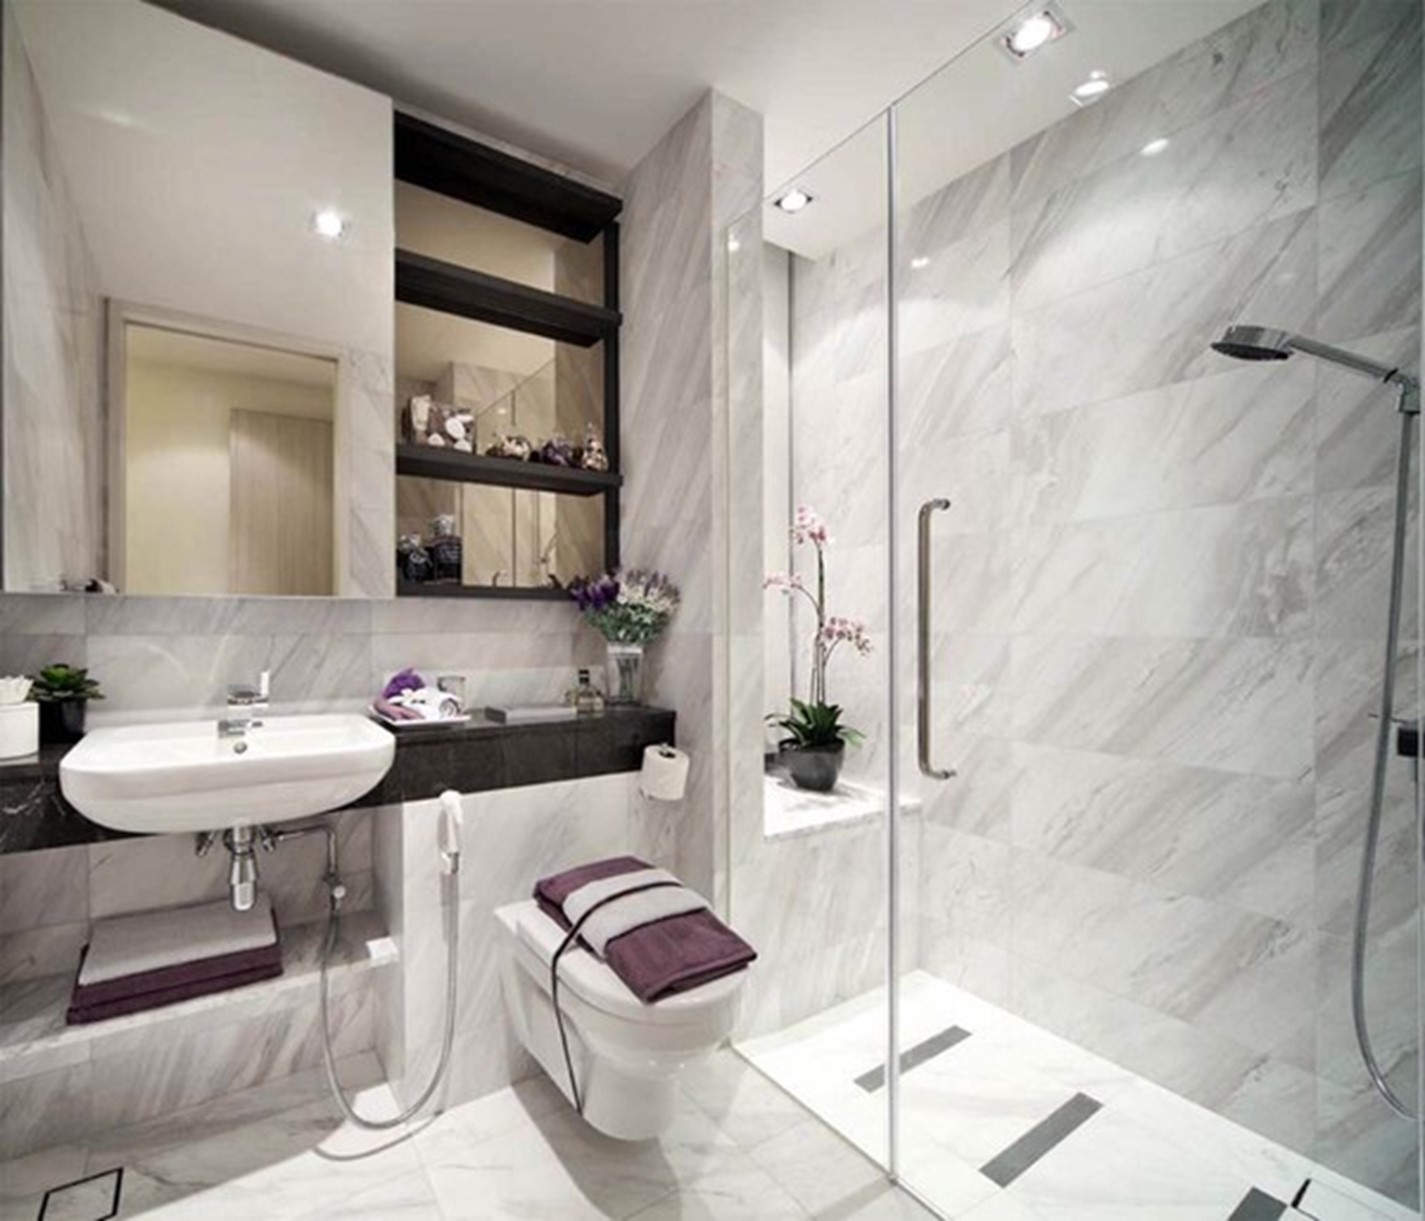 Phòng vệ sinh được phân tách hai khu khô - ướt bằng vạch kính trong suốt giúp căn phòng luôn sạch sẽ và thông thoáng.